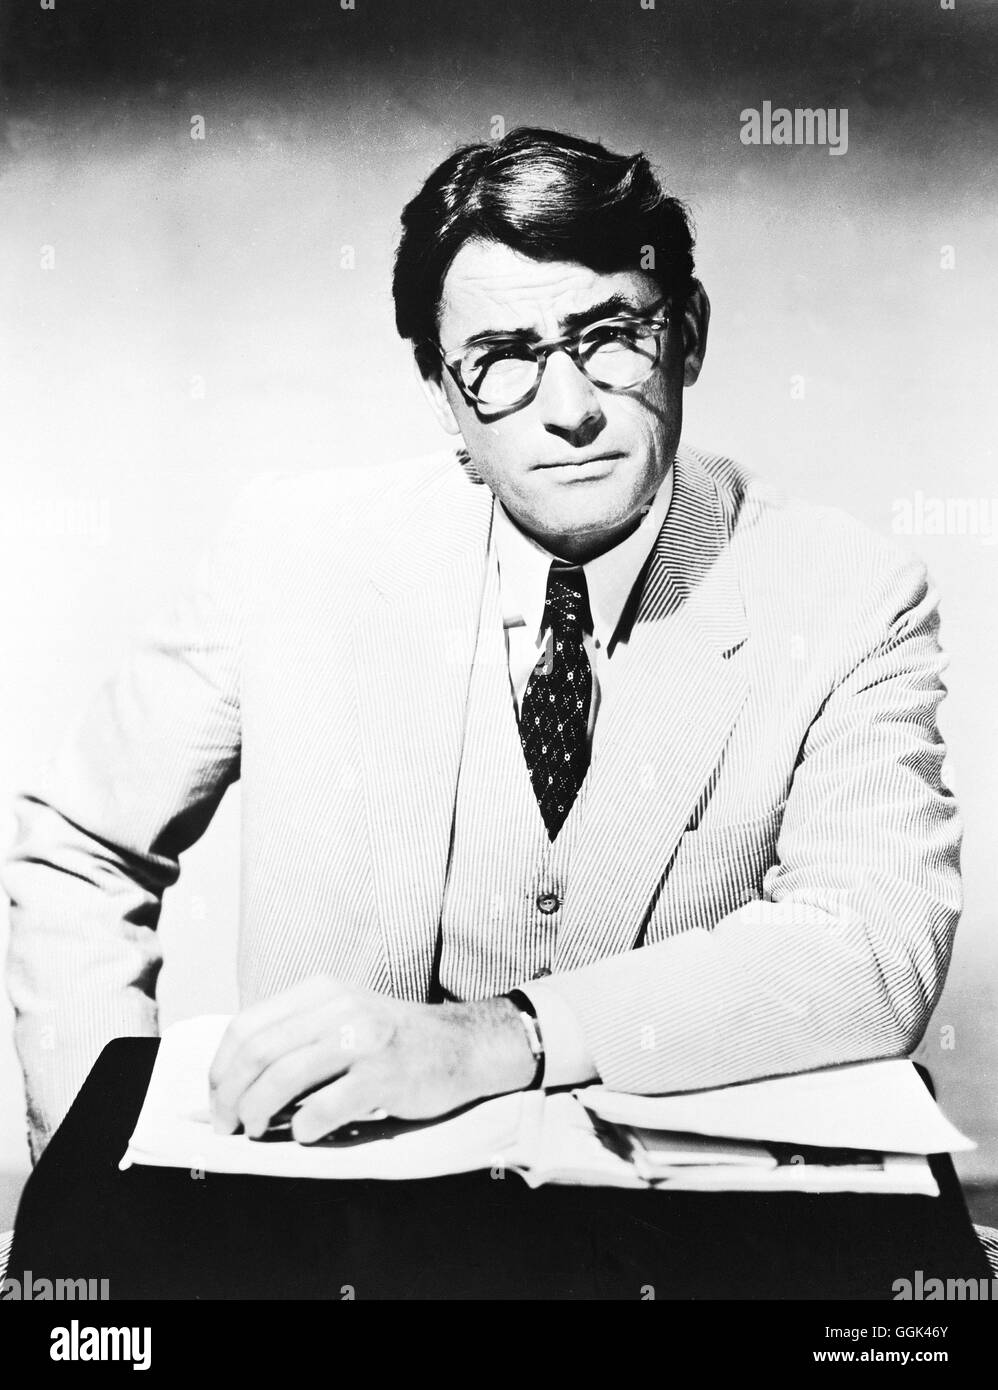 WER DIE NACHTIGALL STÖRT / To Kill a Mockingbird USA 1962 / Robert Mulligan Atticus Finch ( Gregory Peck) verteidigt vor Gericht einen Schwarzen und wird dabei den Rassenvorurteilen schmerzlich mit der Bevölkerung konfrontiert... Regie : Robert Mulligan aka. To Kill a Mockingbird Banque D'Images